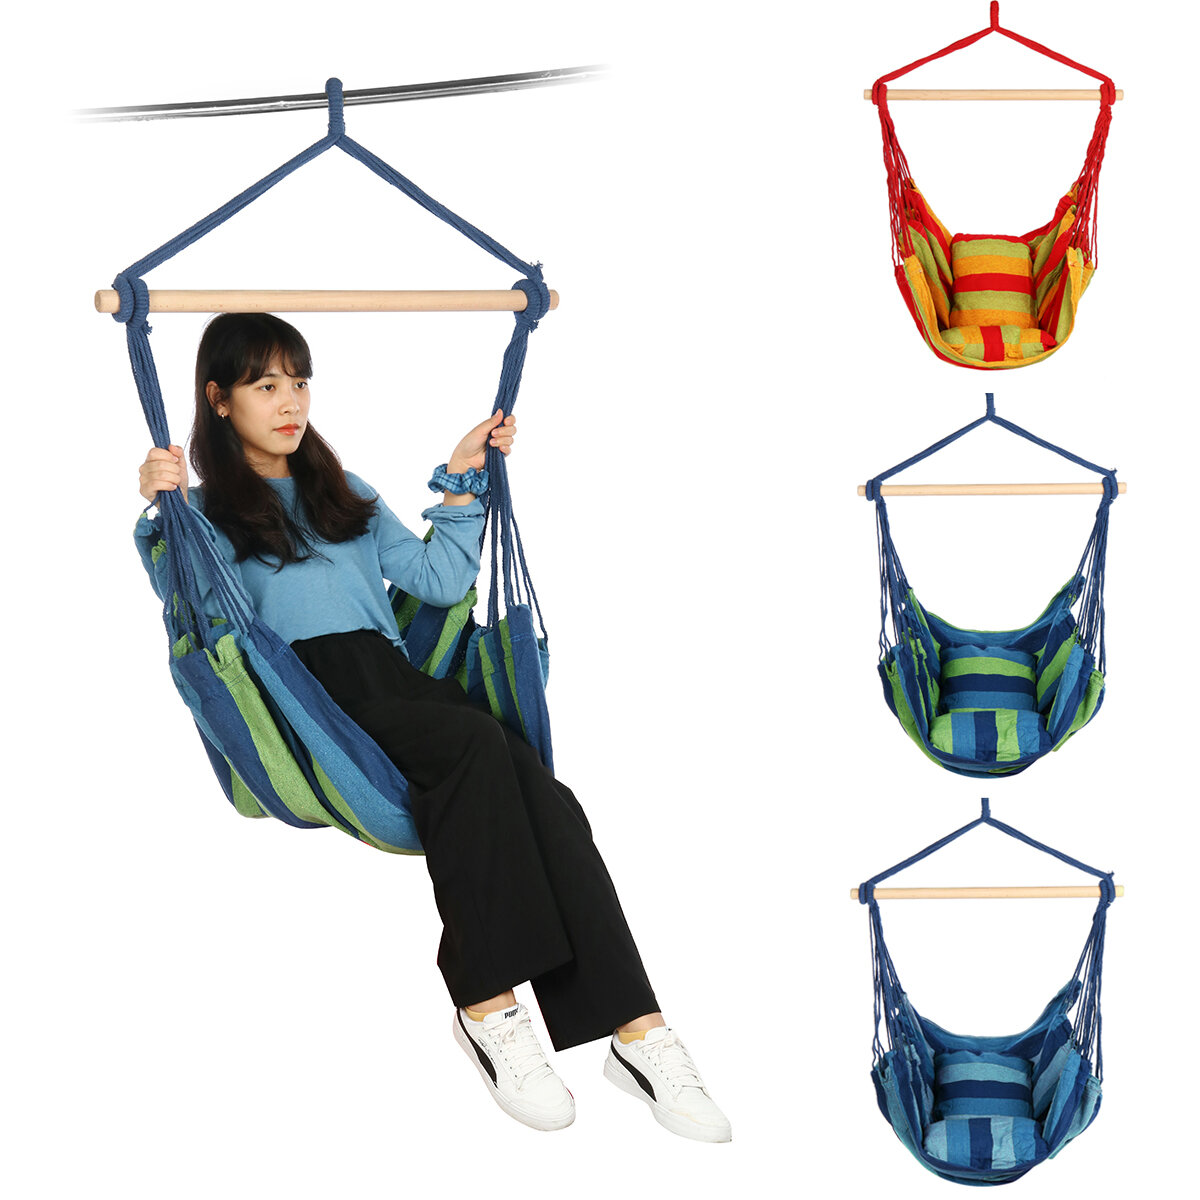 Cadeira de rede dobrável para camping, pendurada em cordas para piquenique, caminhada e viagem ao ar livre.